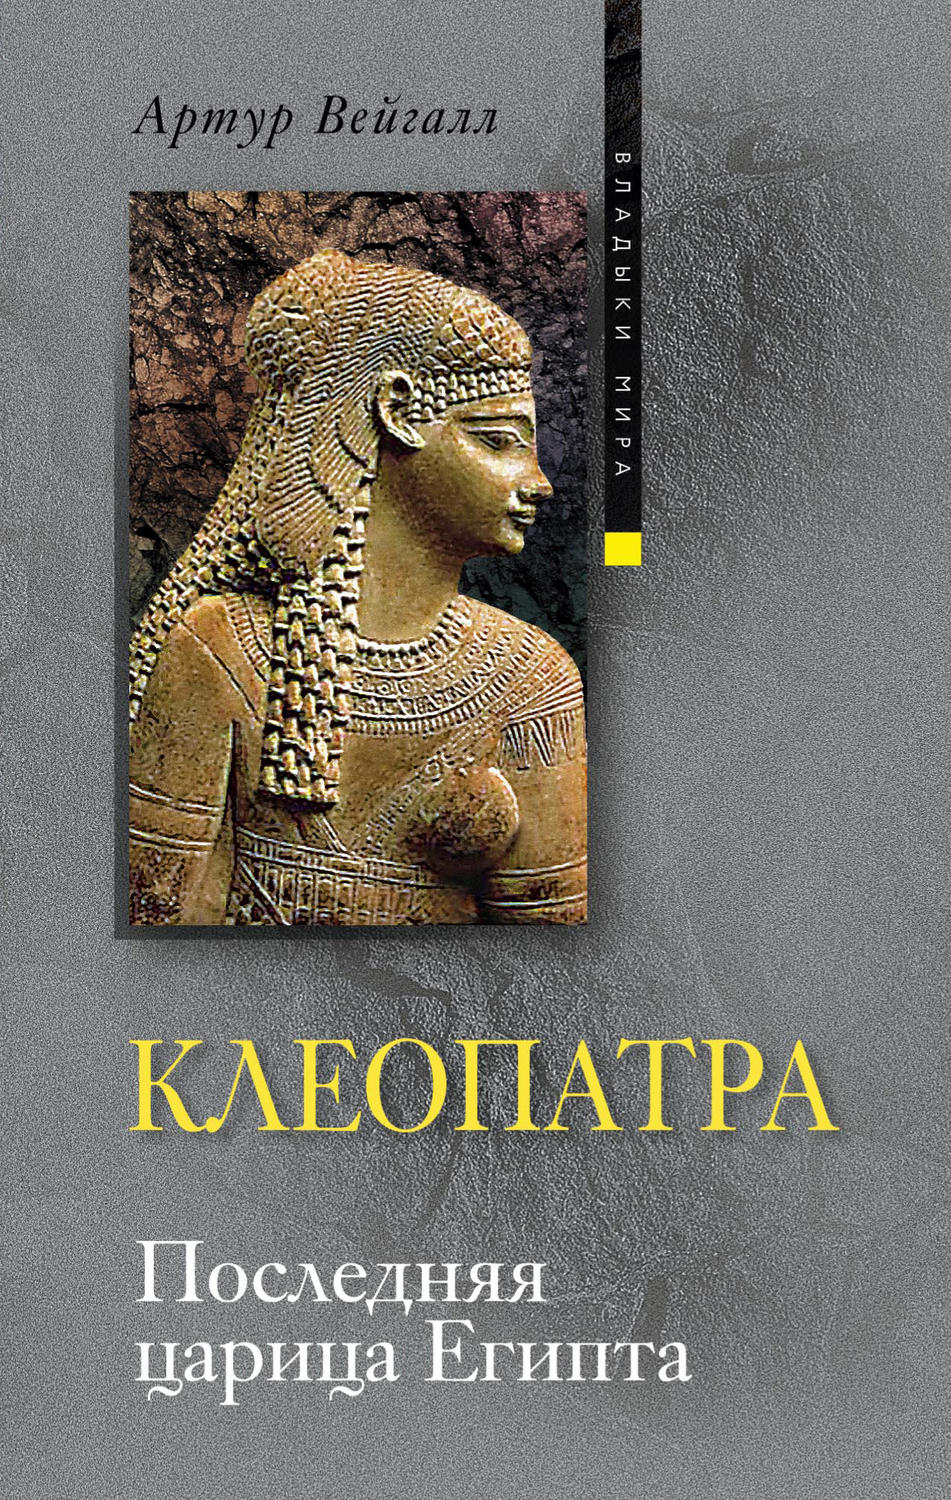 Скачать бесплатно книгу клеопатра последняя царица египта